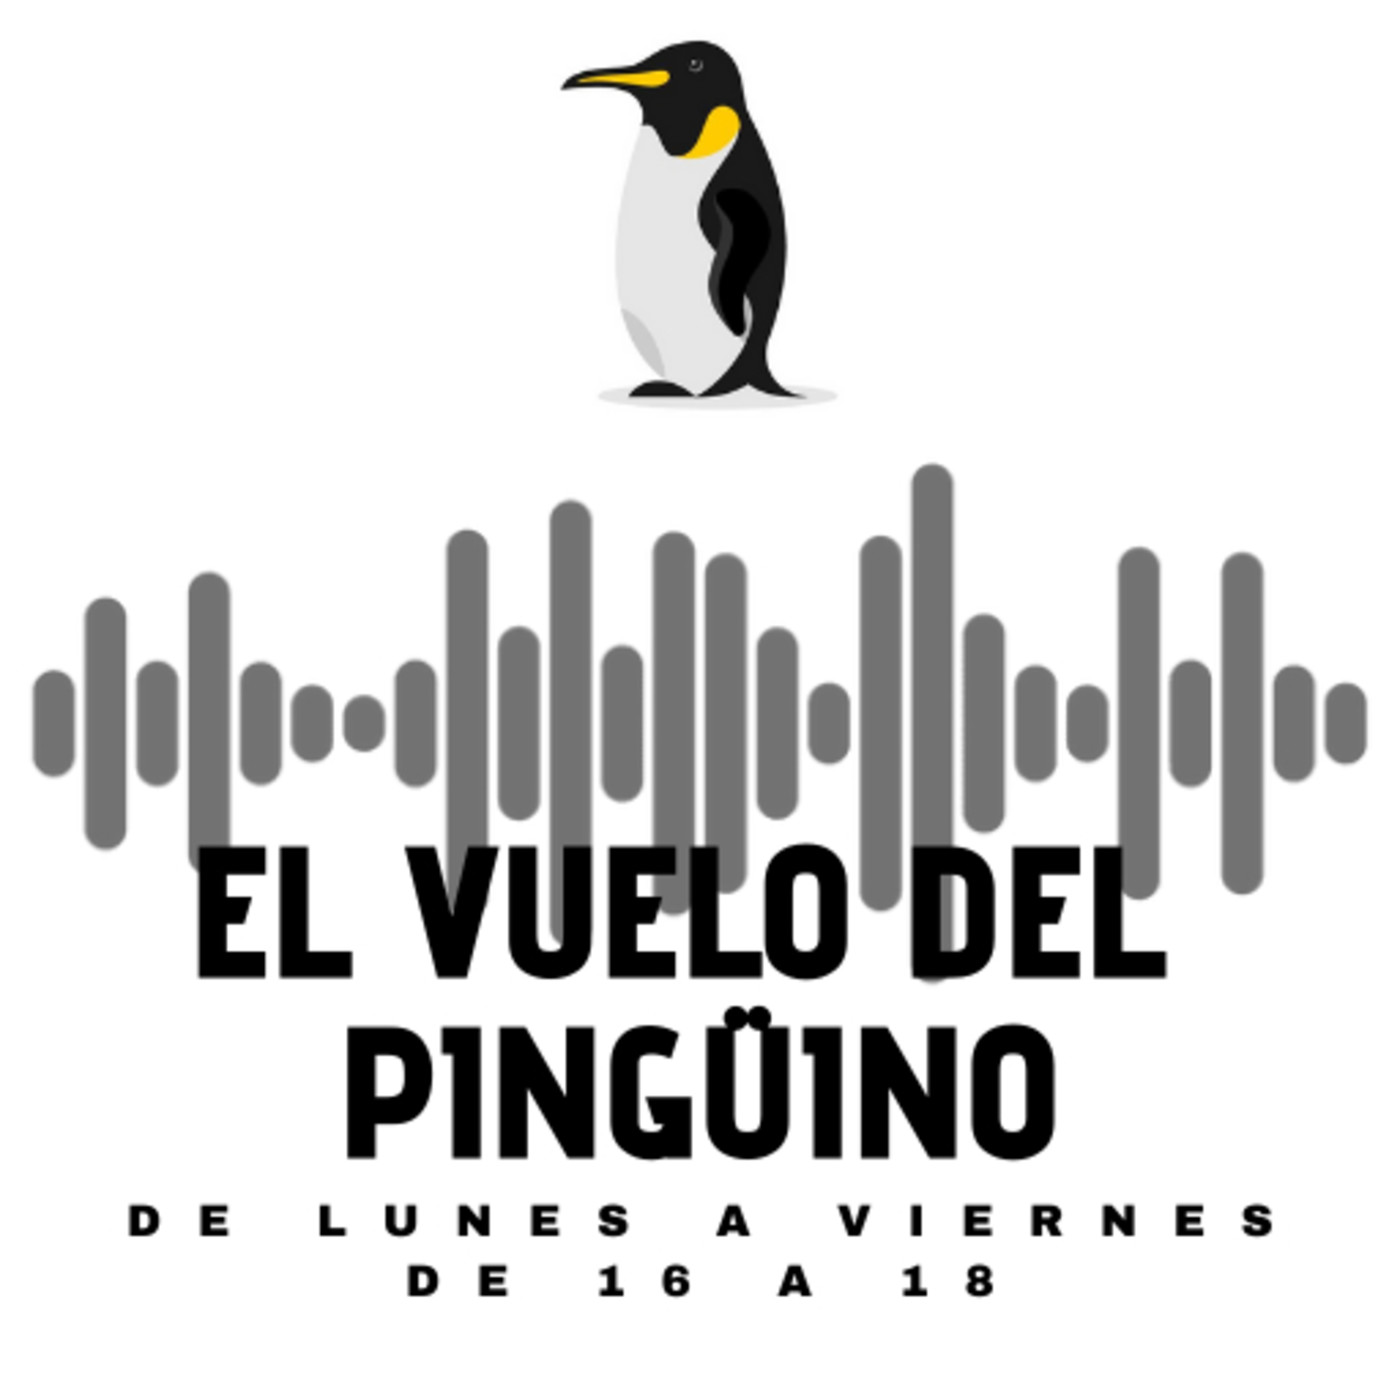 El vuelo del Pingüino - Lunes - Actualidad, humor, cultura y música - 18-01-2021